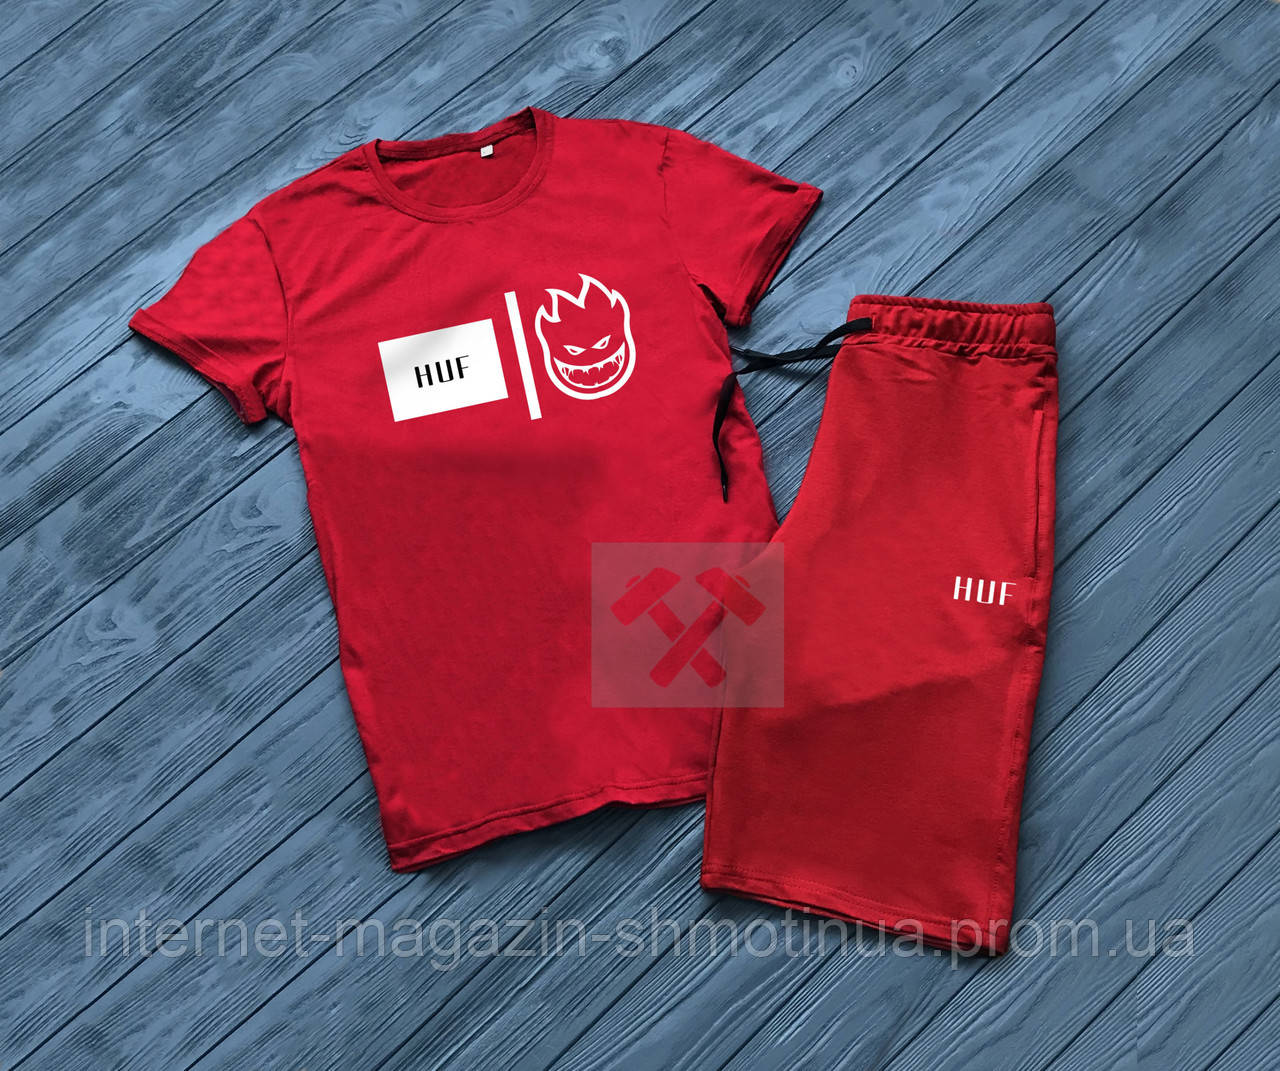 

Мужской комплект футболка + шорты HUF красного цвета (люкс копия)